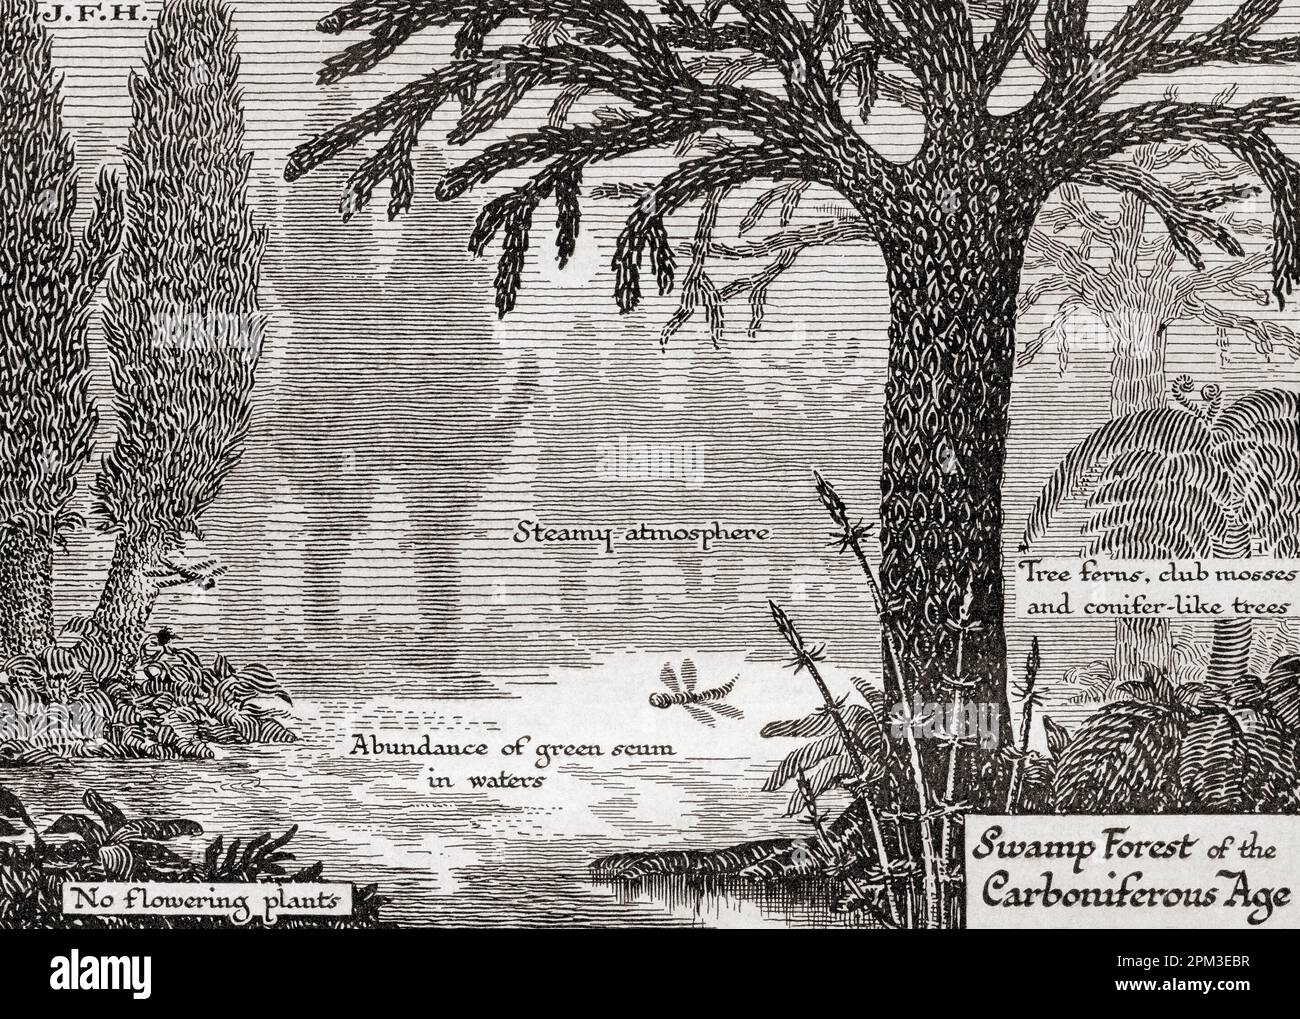 Das Lebensdiagramm im späten paleozoischen oder palaeozoischen Zeitalter. Sumpfwald der Karbonuszeit. Aus dem Buch Outline of History von H.G. Wells, veröffentlicht 1920. Stockfoto